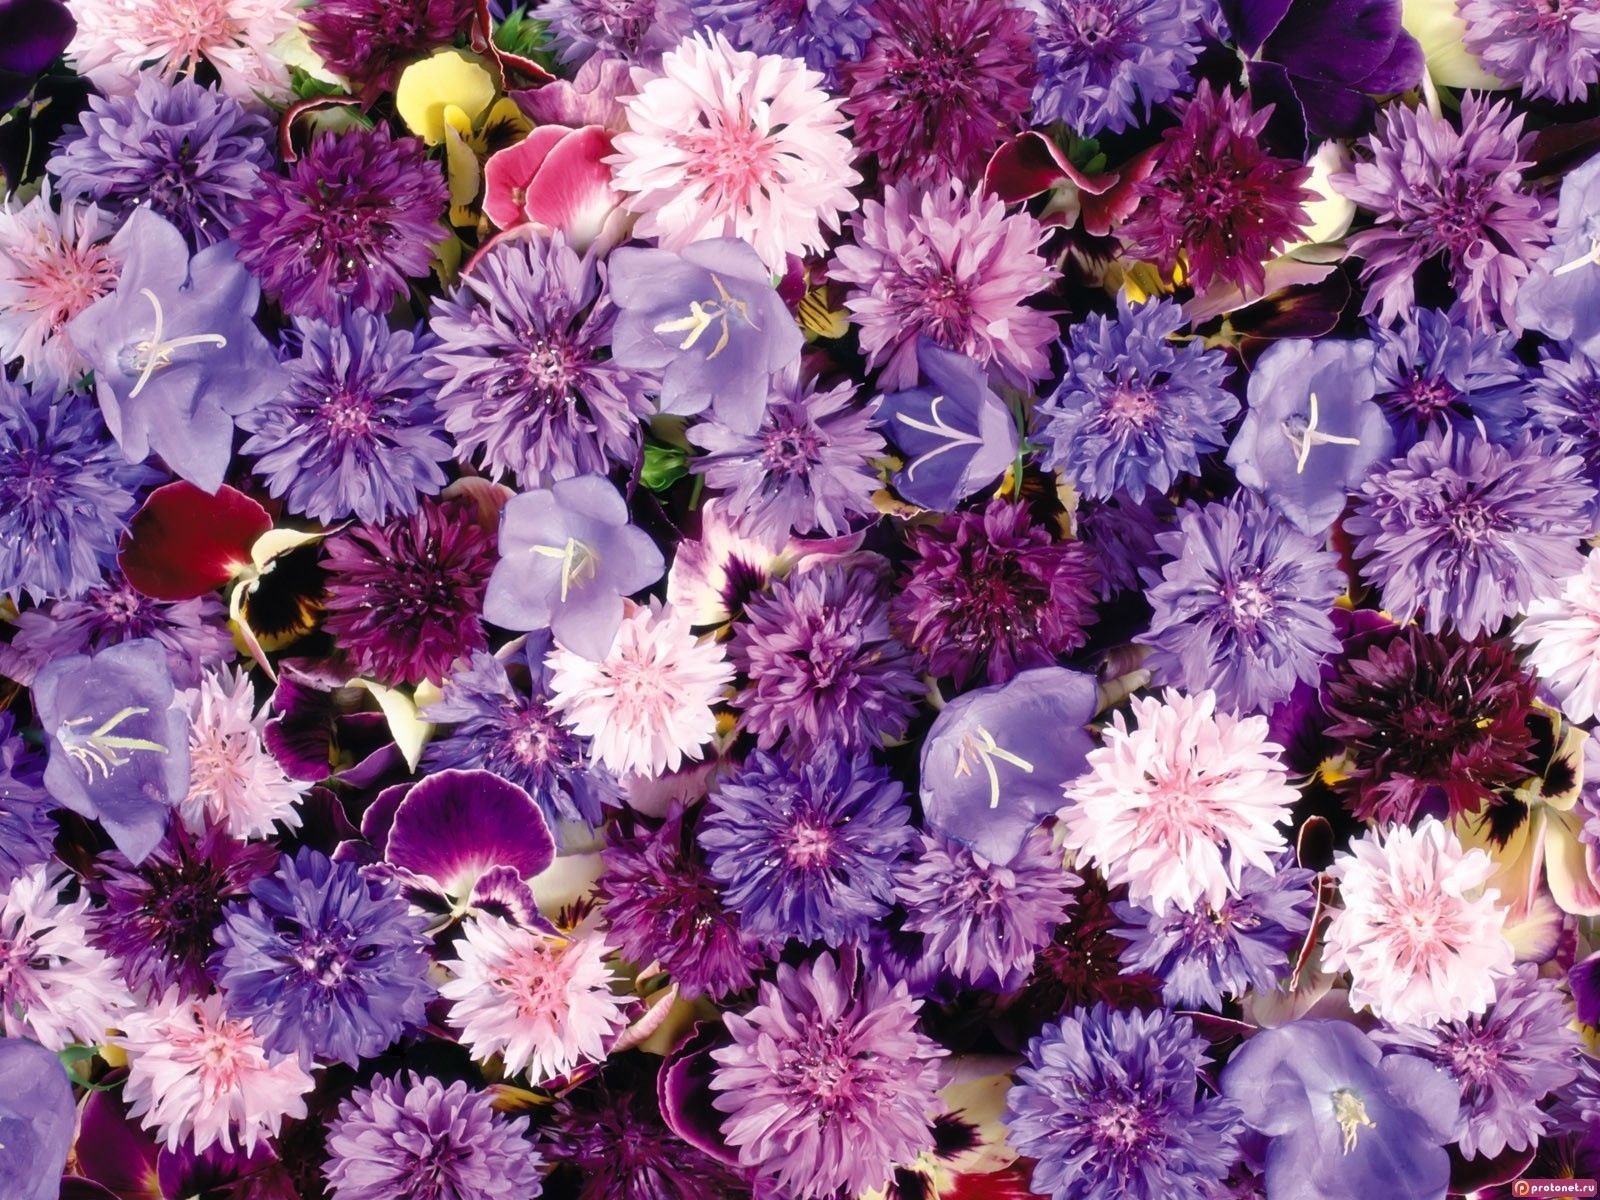  Blumen Hintergrundbild 1600x1200. Hintergrundbild für Handys: Blumen, Pflanzen, Hintergrund, 4452 Bild kostenlos herunterladen